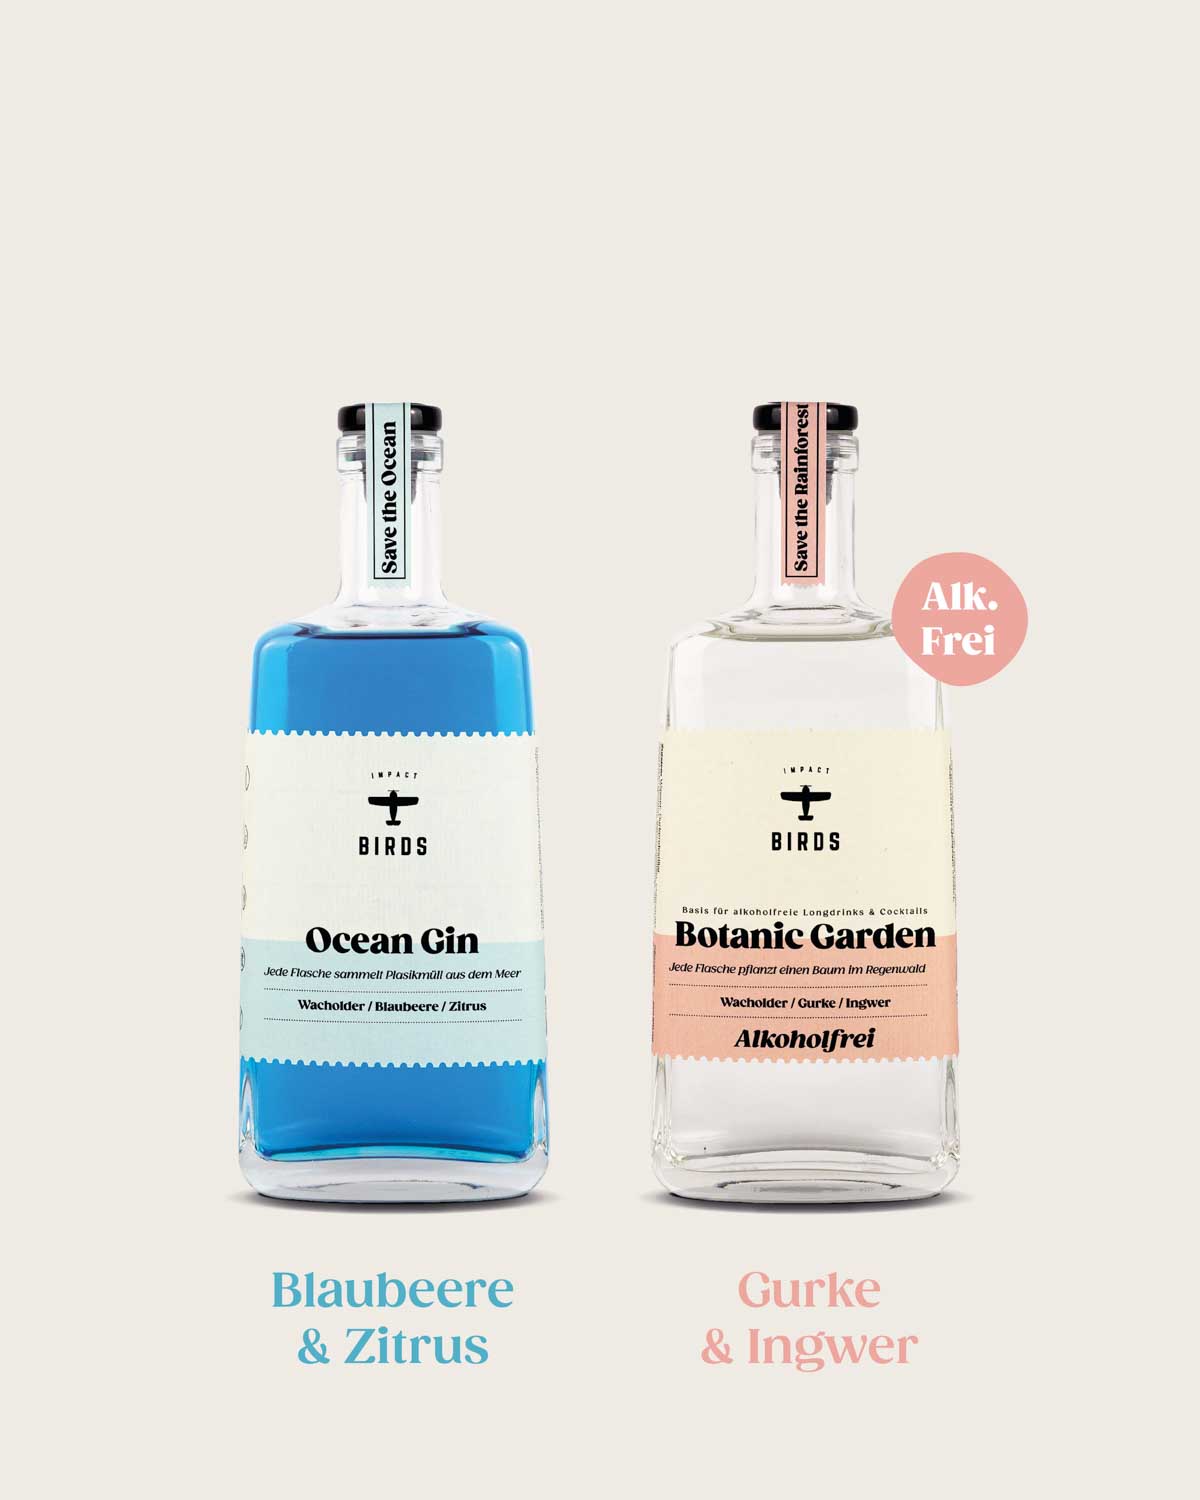 Der Ocean Gin und der alkoholfreie Botanic Garden im Doppelpack als Probierpaket. Der Ocean Gin schmeckt nach Blaubeere und Zitrus. Botanic Garden beinhaltet die Botanicals Gurke und Ingwer.